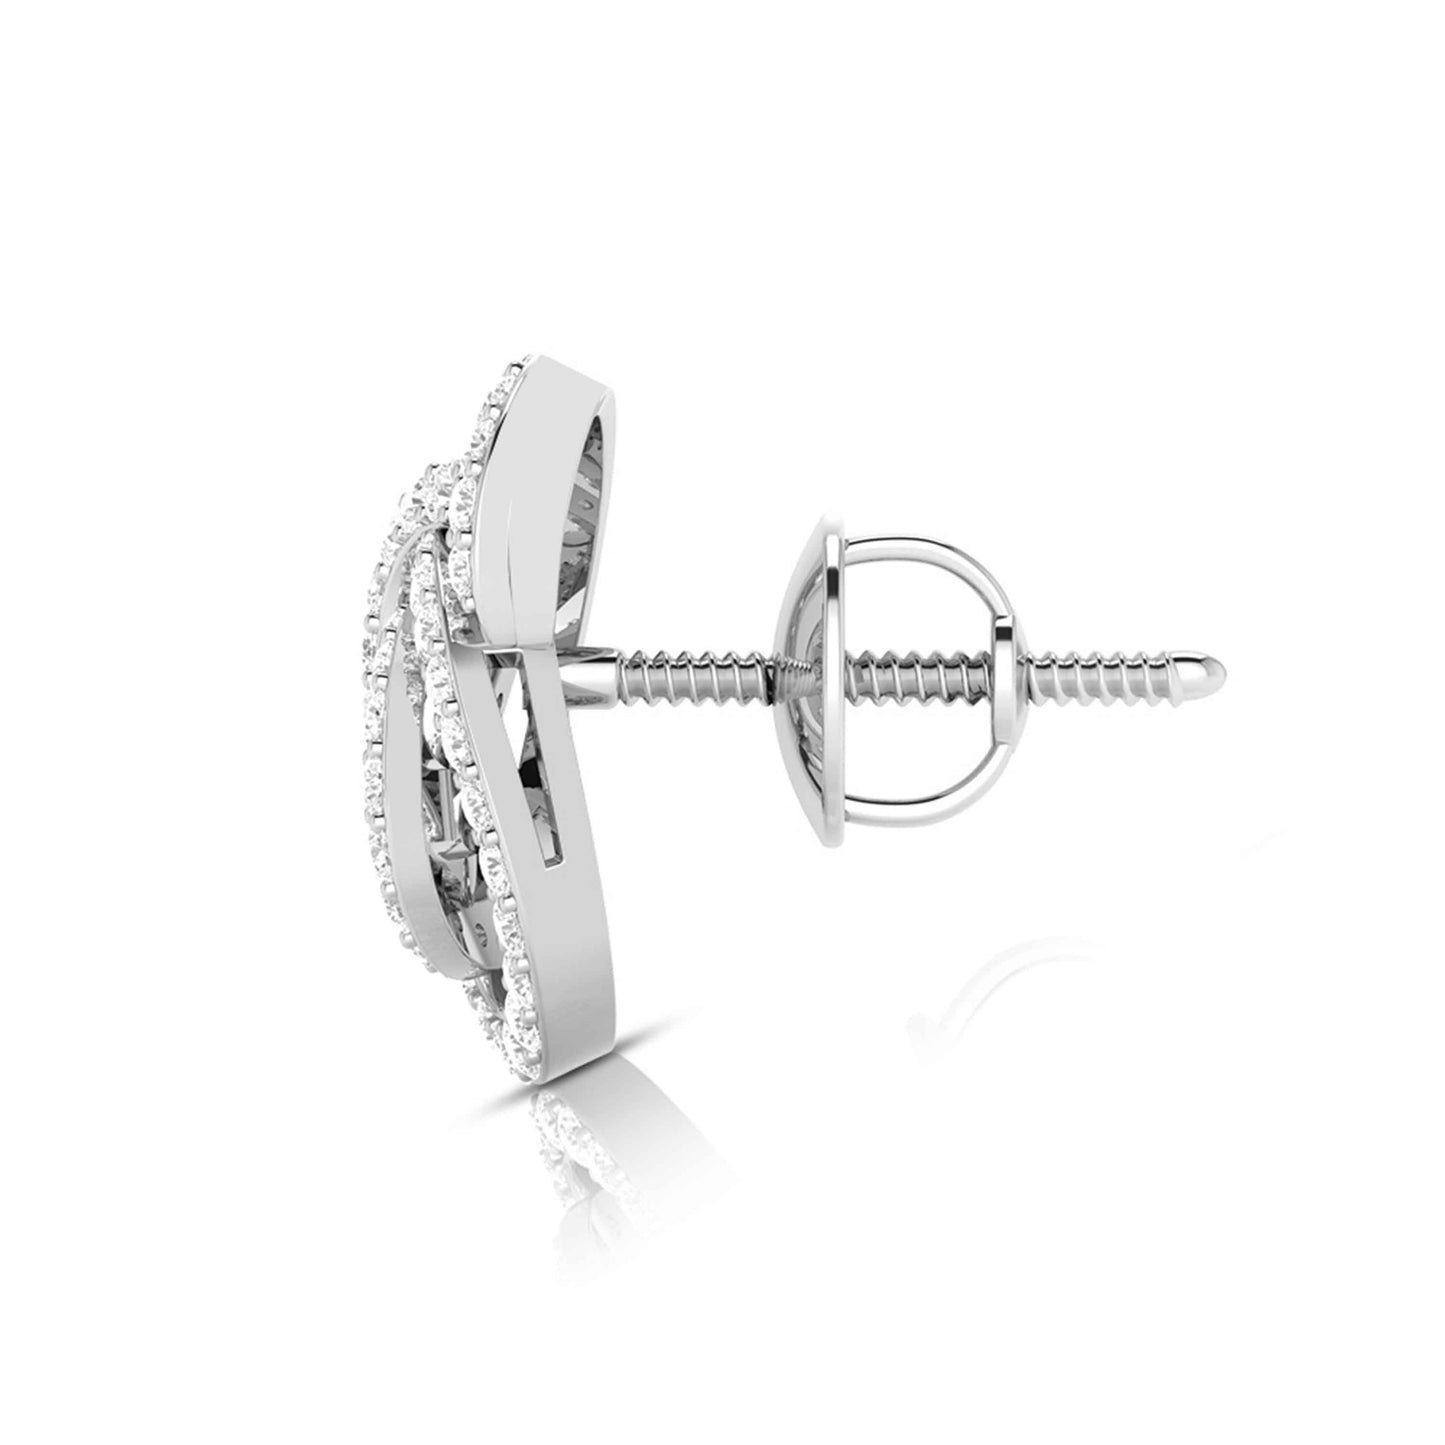 Fancy earrings design Leptir Lab Grown Diamond Earrings Fiona Diamonds